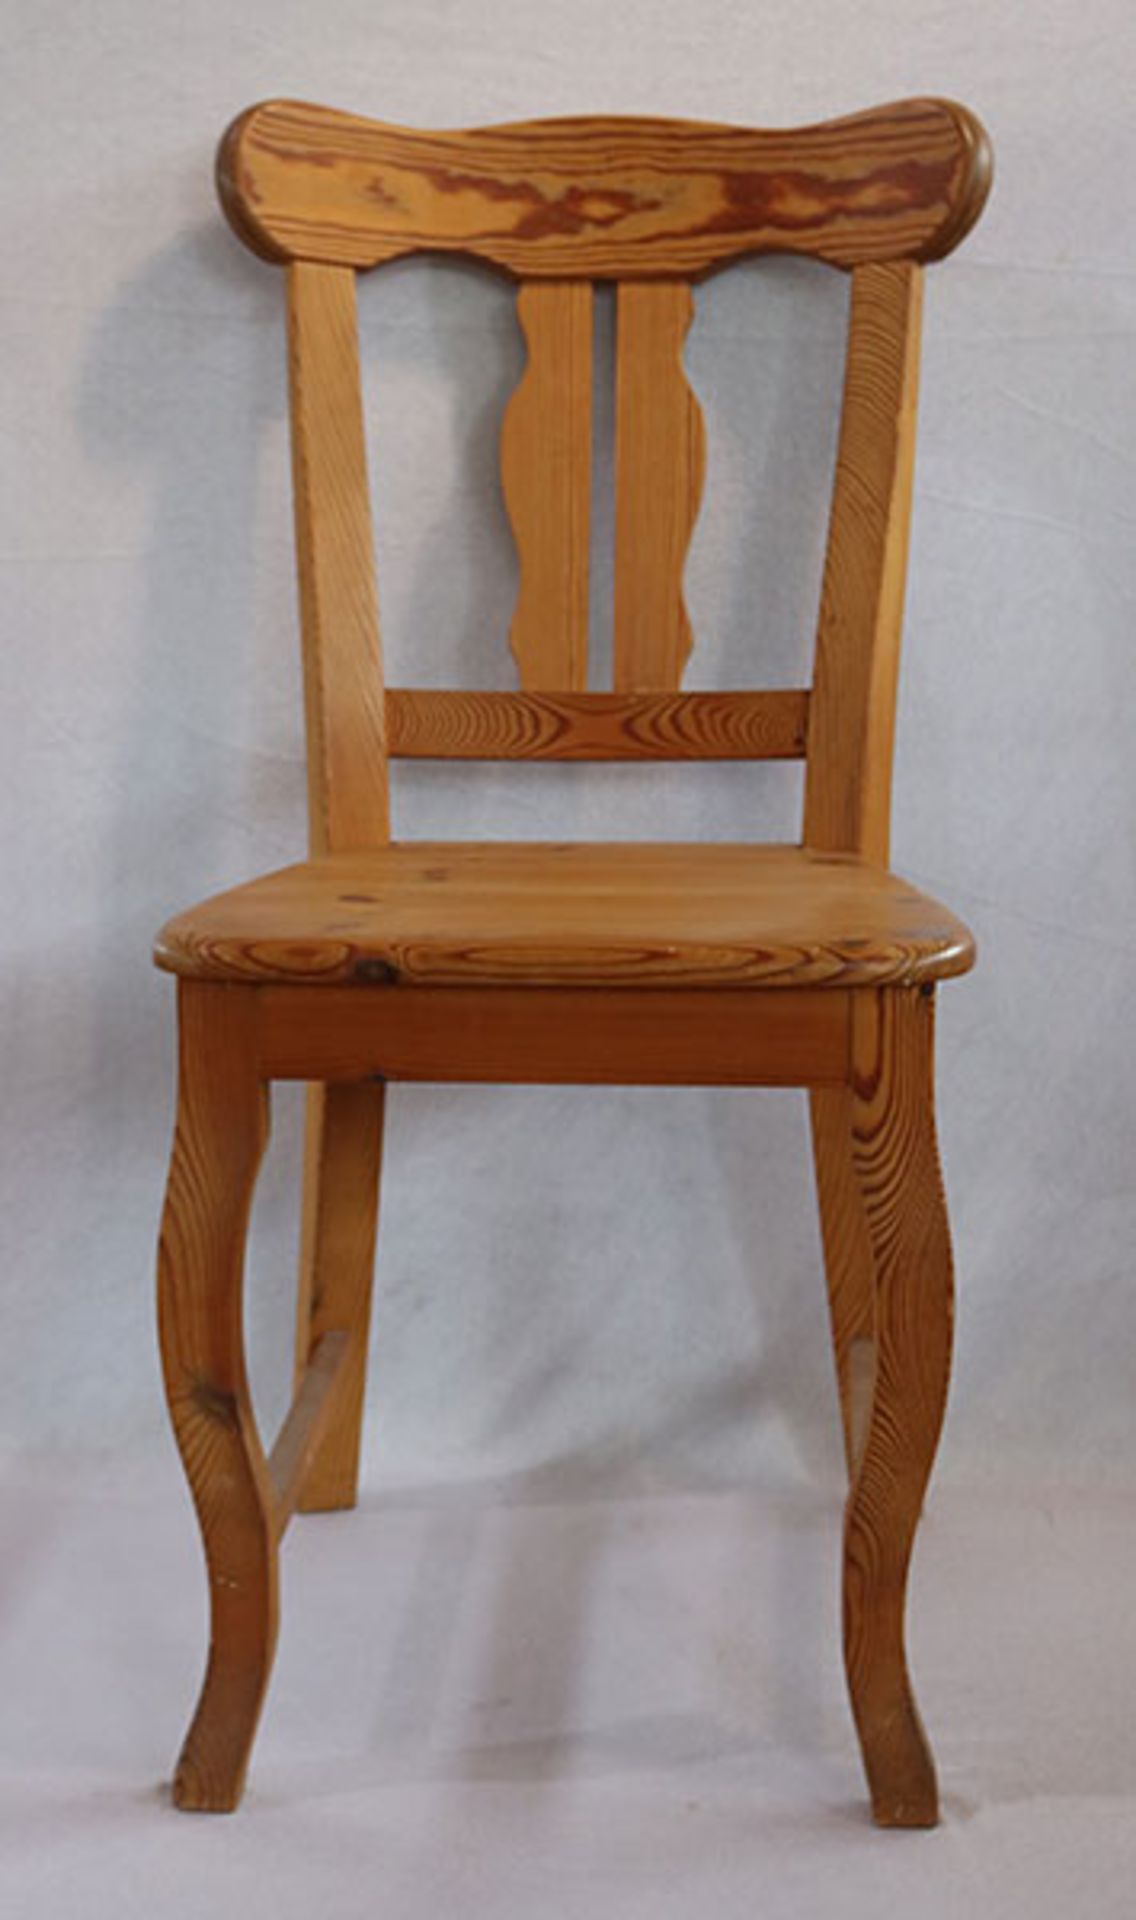 2 Holzstühle auf geschwungenen Beinen, Nadelholz, H 91 cm, B 42 cm, T 43 cm, Gebrauchsspuren